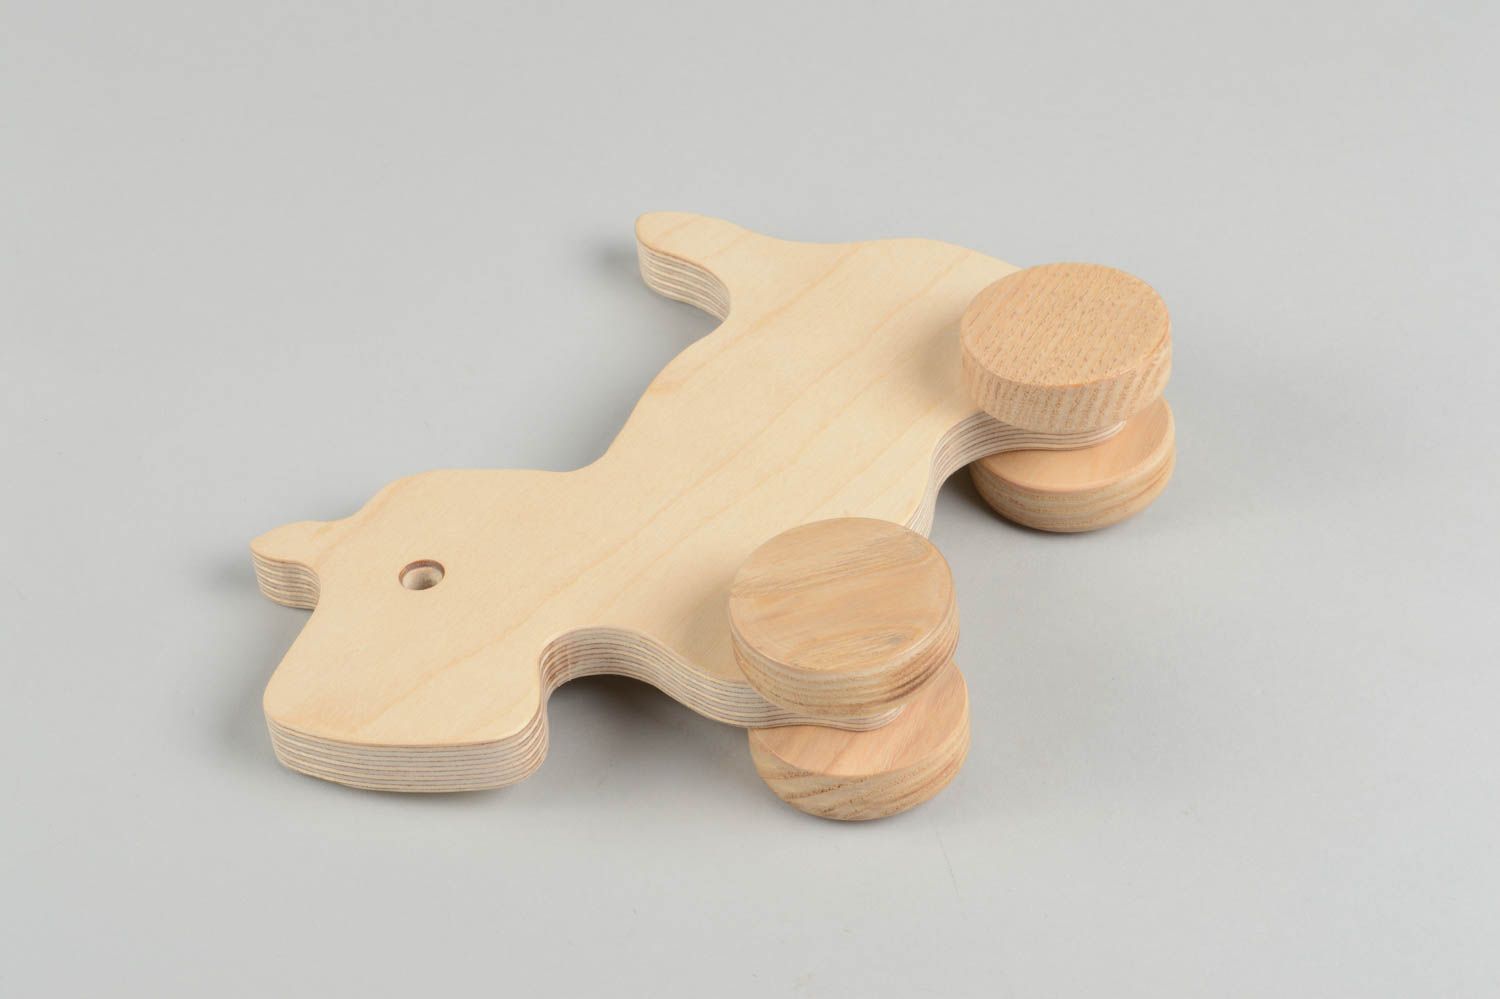 Игрушка ручной работы игрушка из дерева ясеня игрушка каталка Животное фото 3